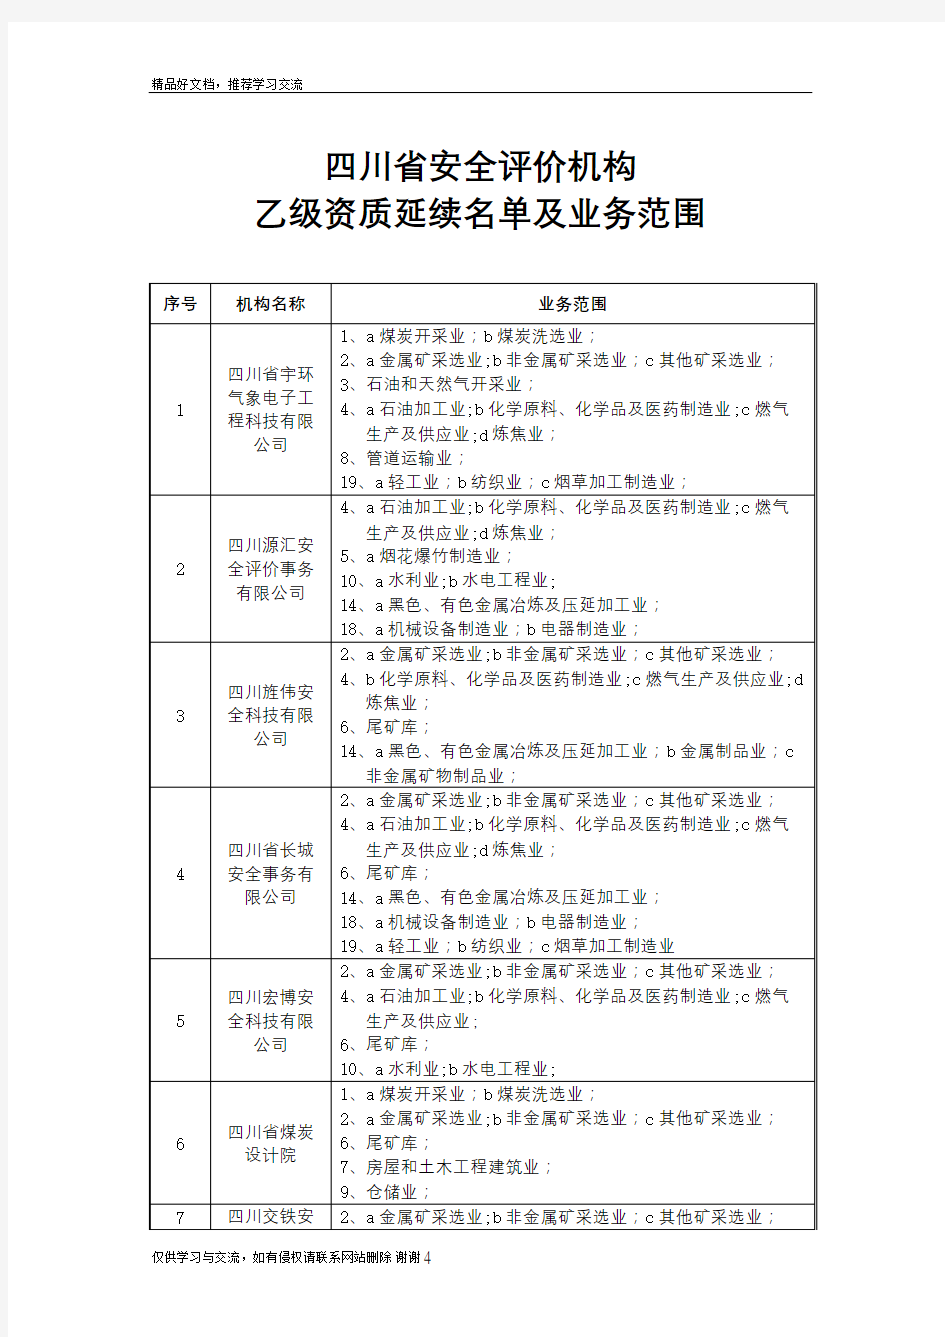 最新四川省安全评价机构(乙级)